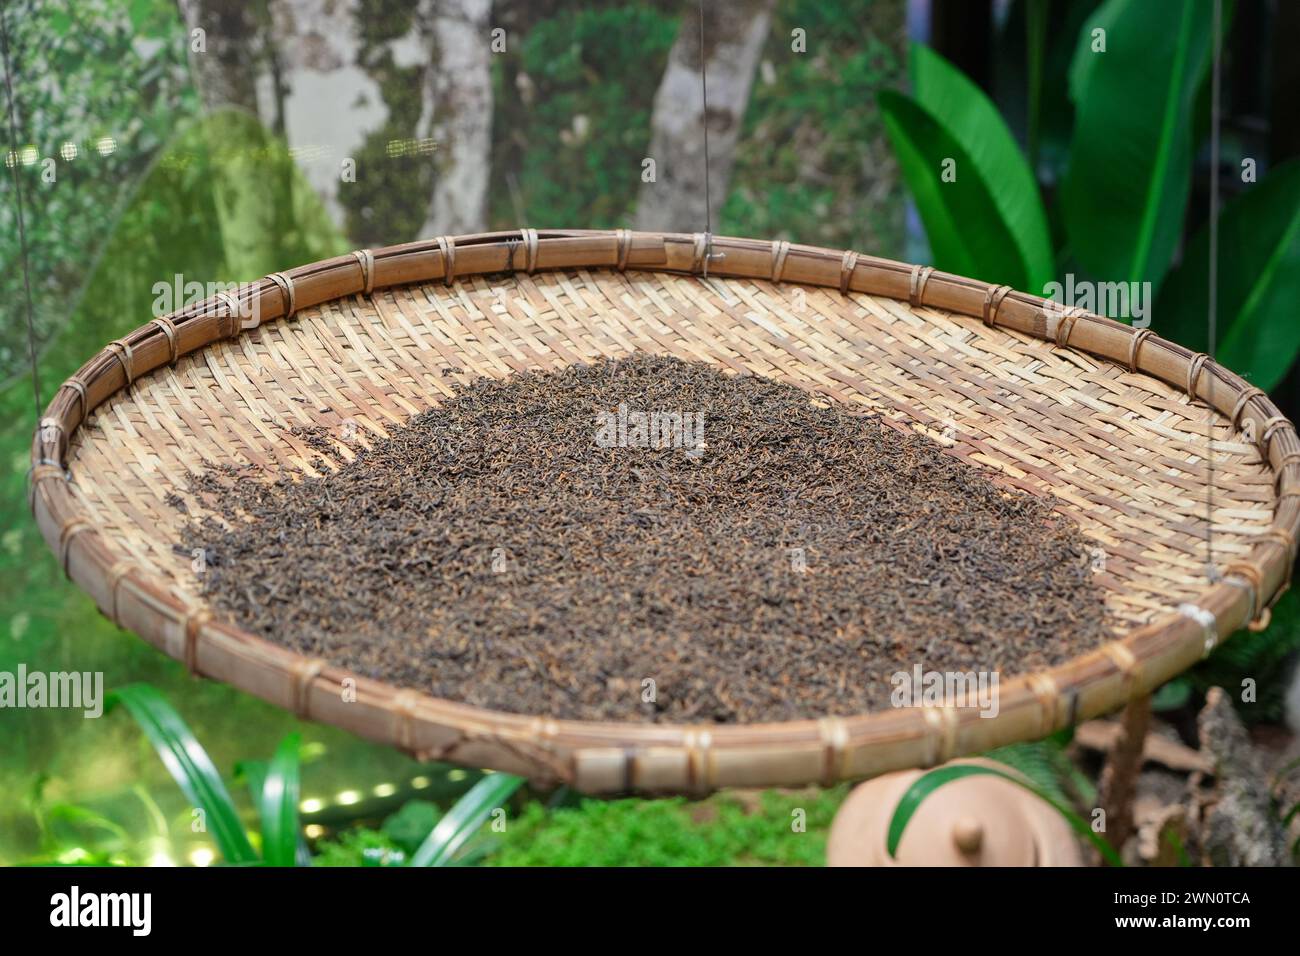 Asciugare le foglie di tè in un vassoio di bambù Foto Stock